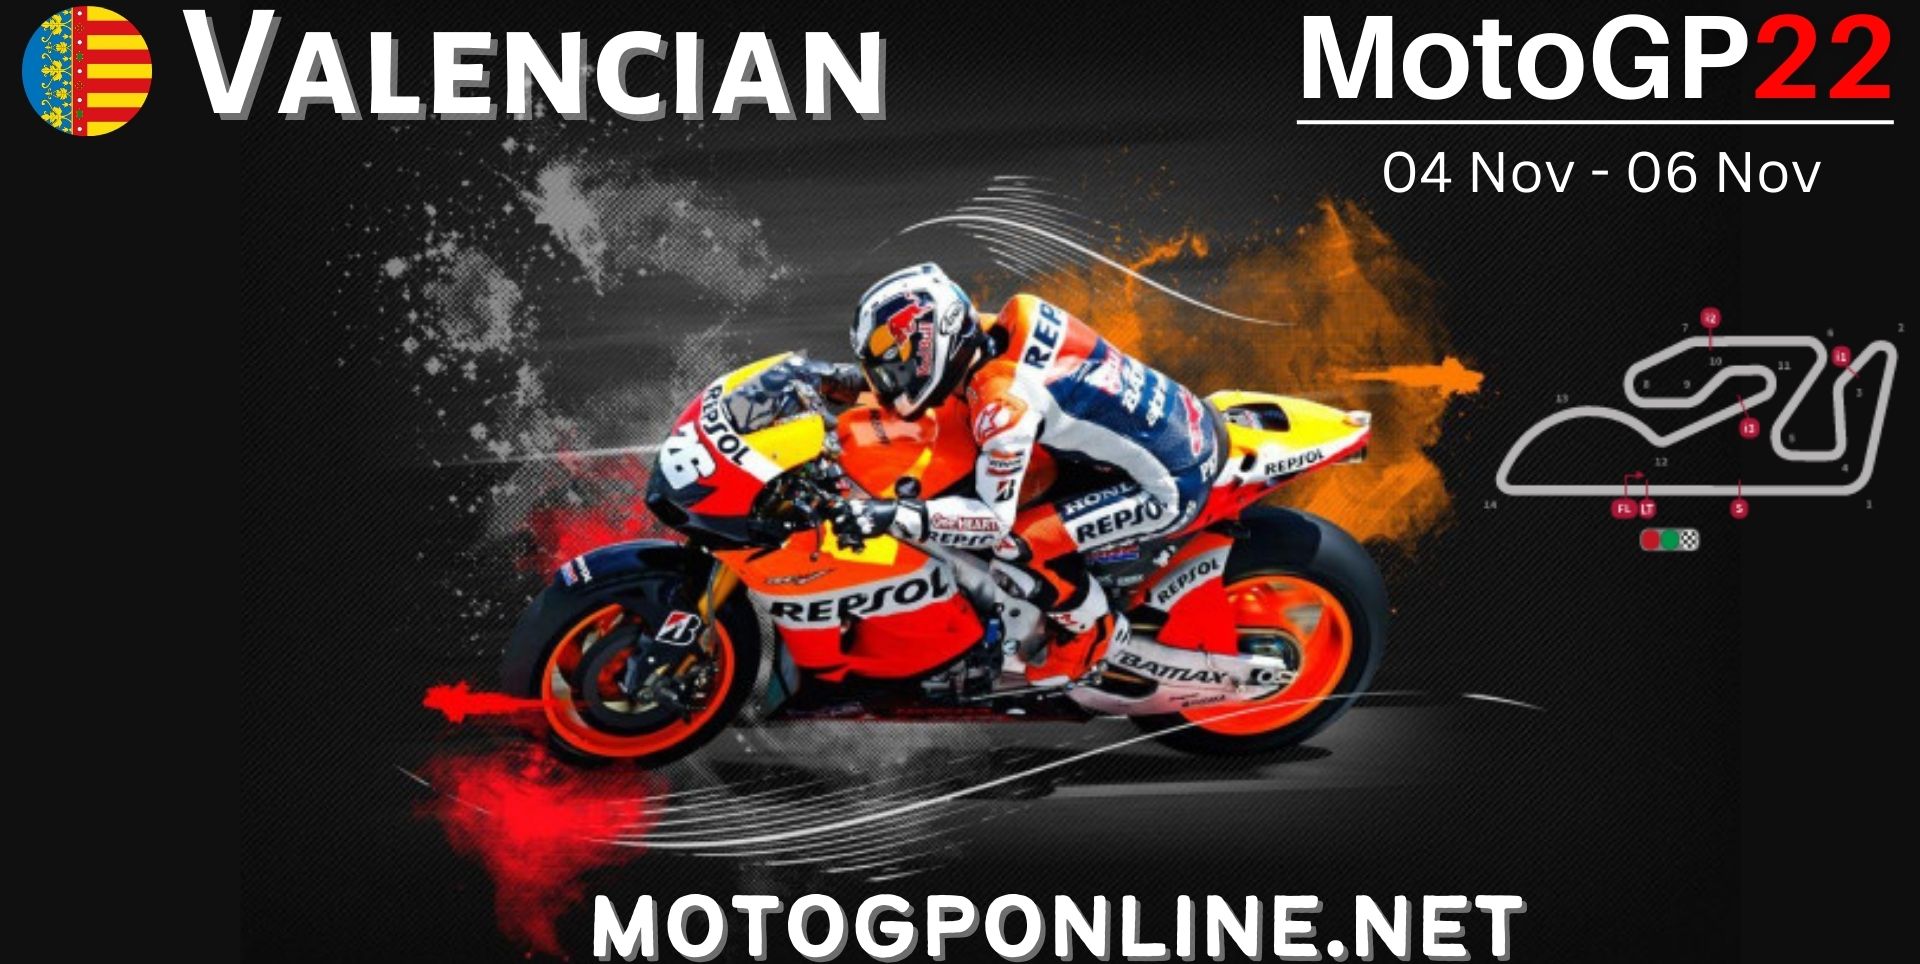 MotoGP Valencia 2018 Live Stream